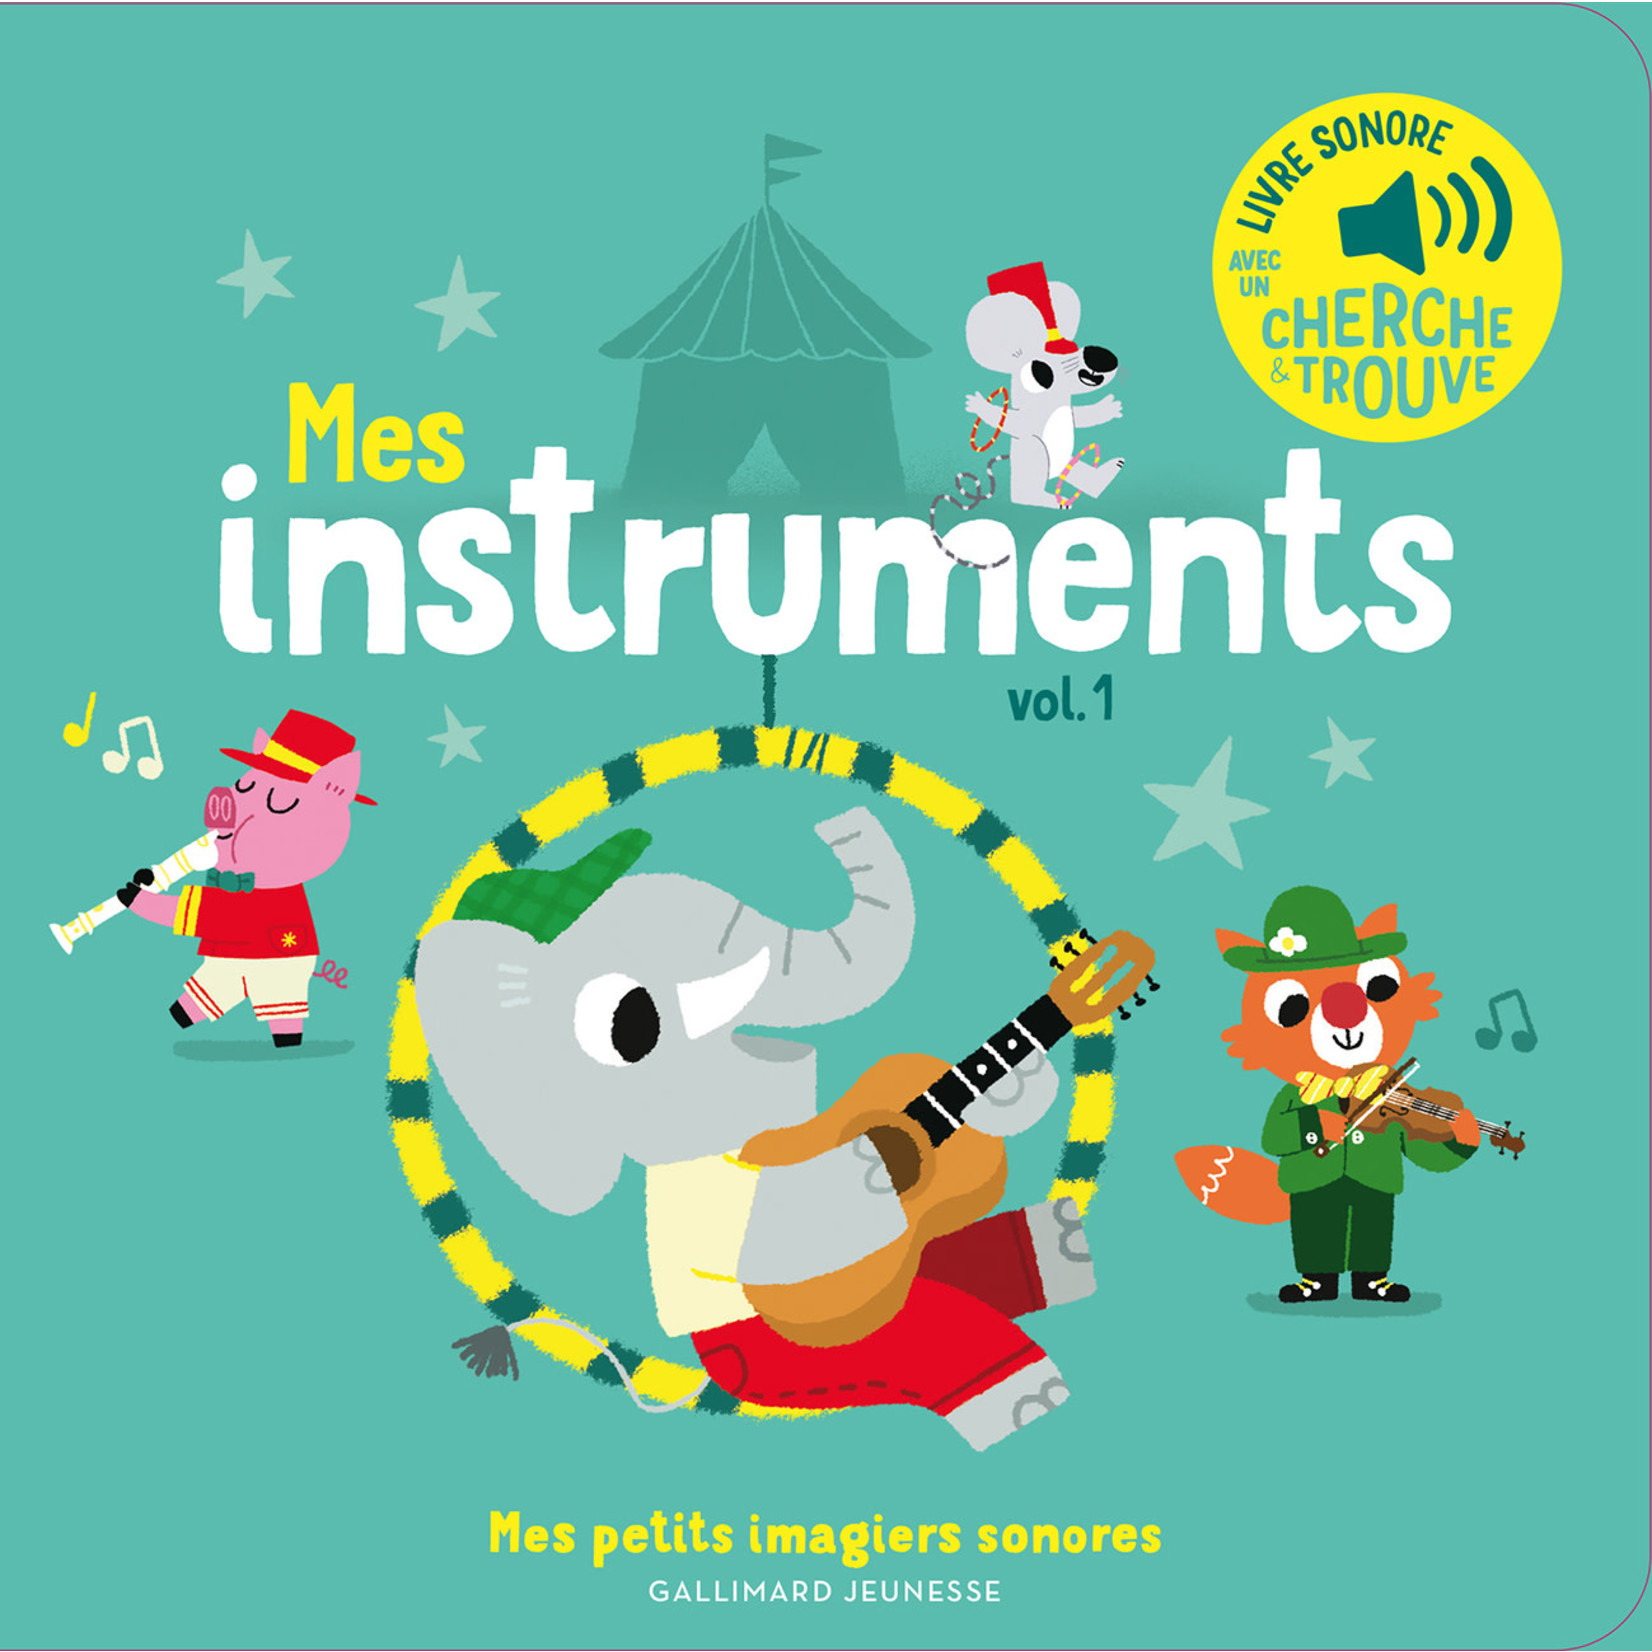 Gallimard Jeunesse (Éditions) GALLIMARD JEUNESSE -  Mes imagiers sonores - Mes instruments vol.1 (avec un cherche et trouve) / French